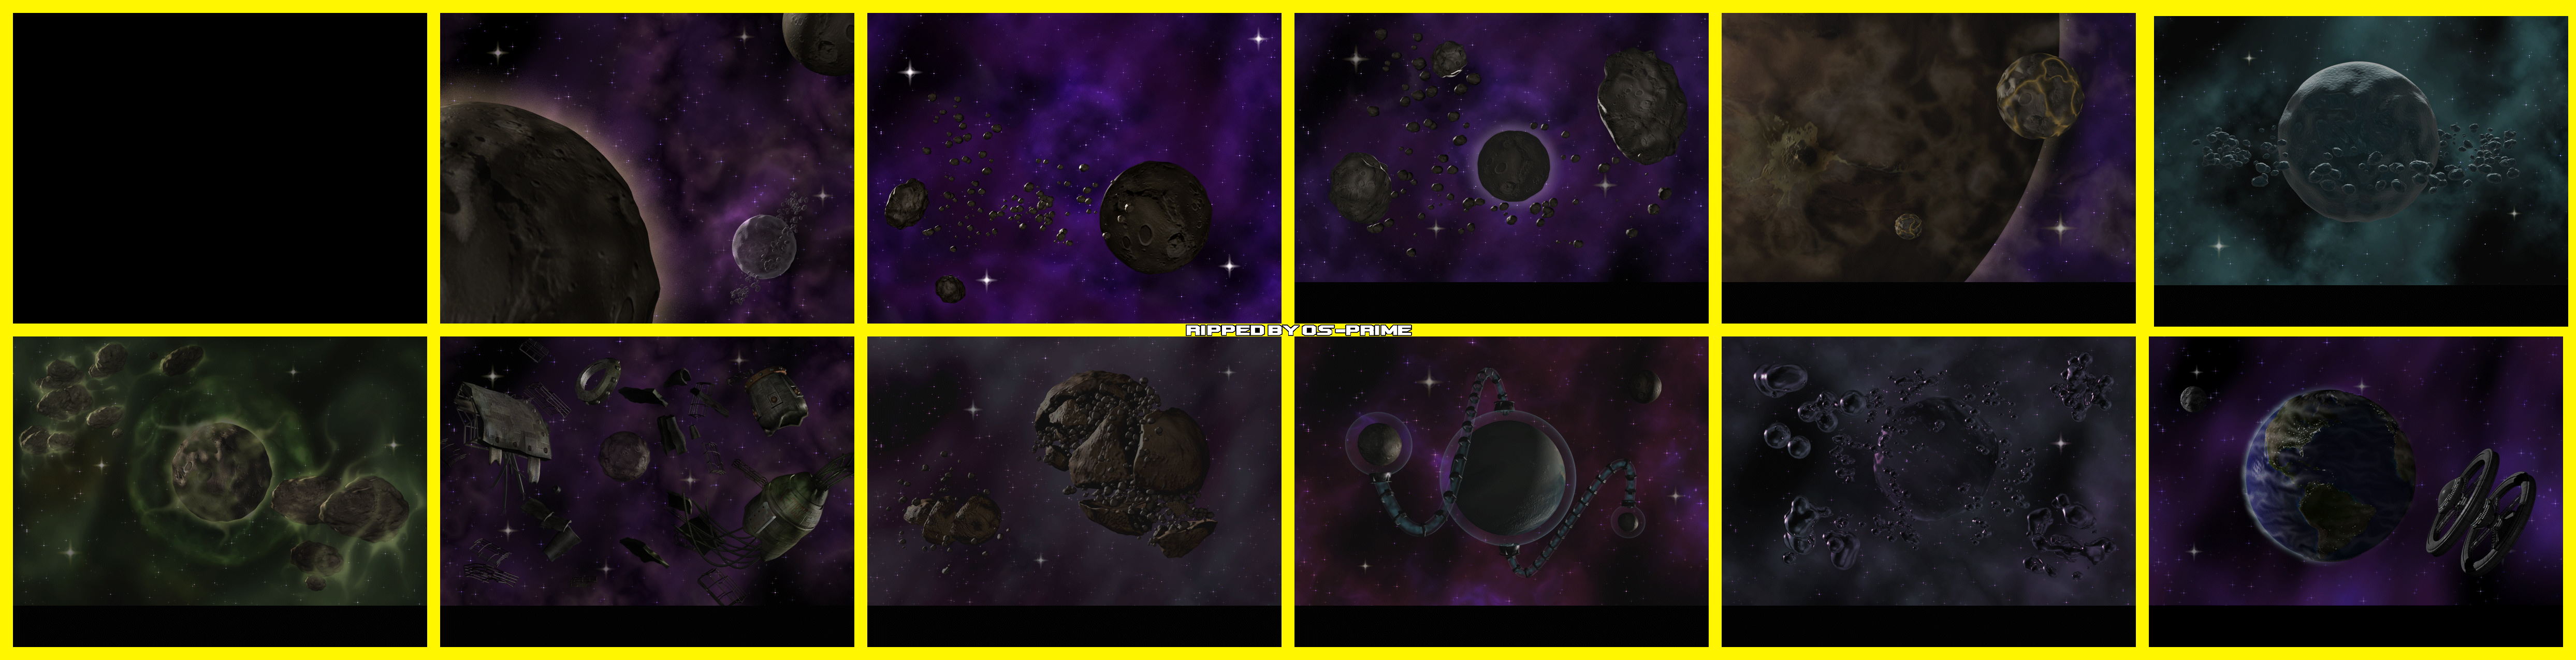 Cosmic Bugs - Backgrounds